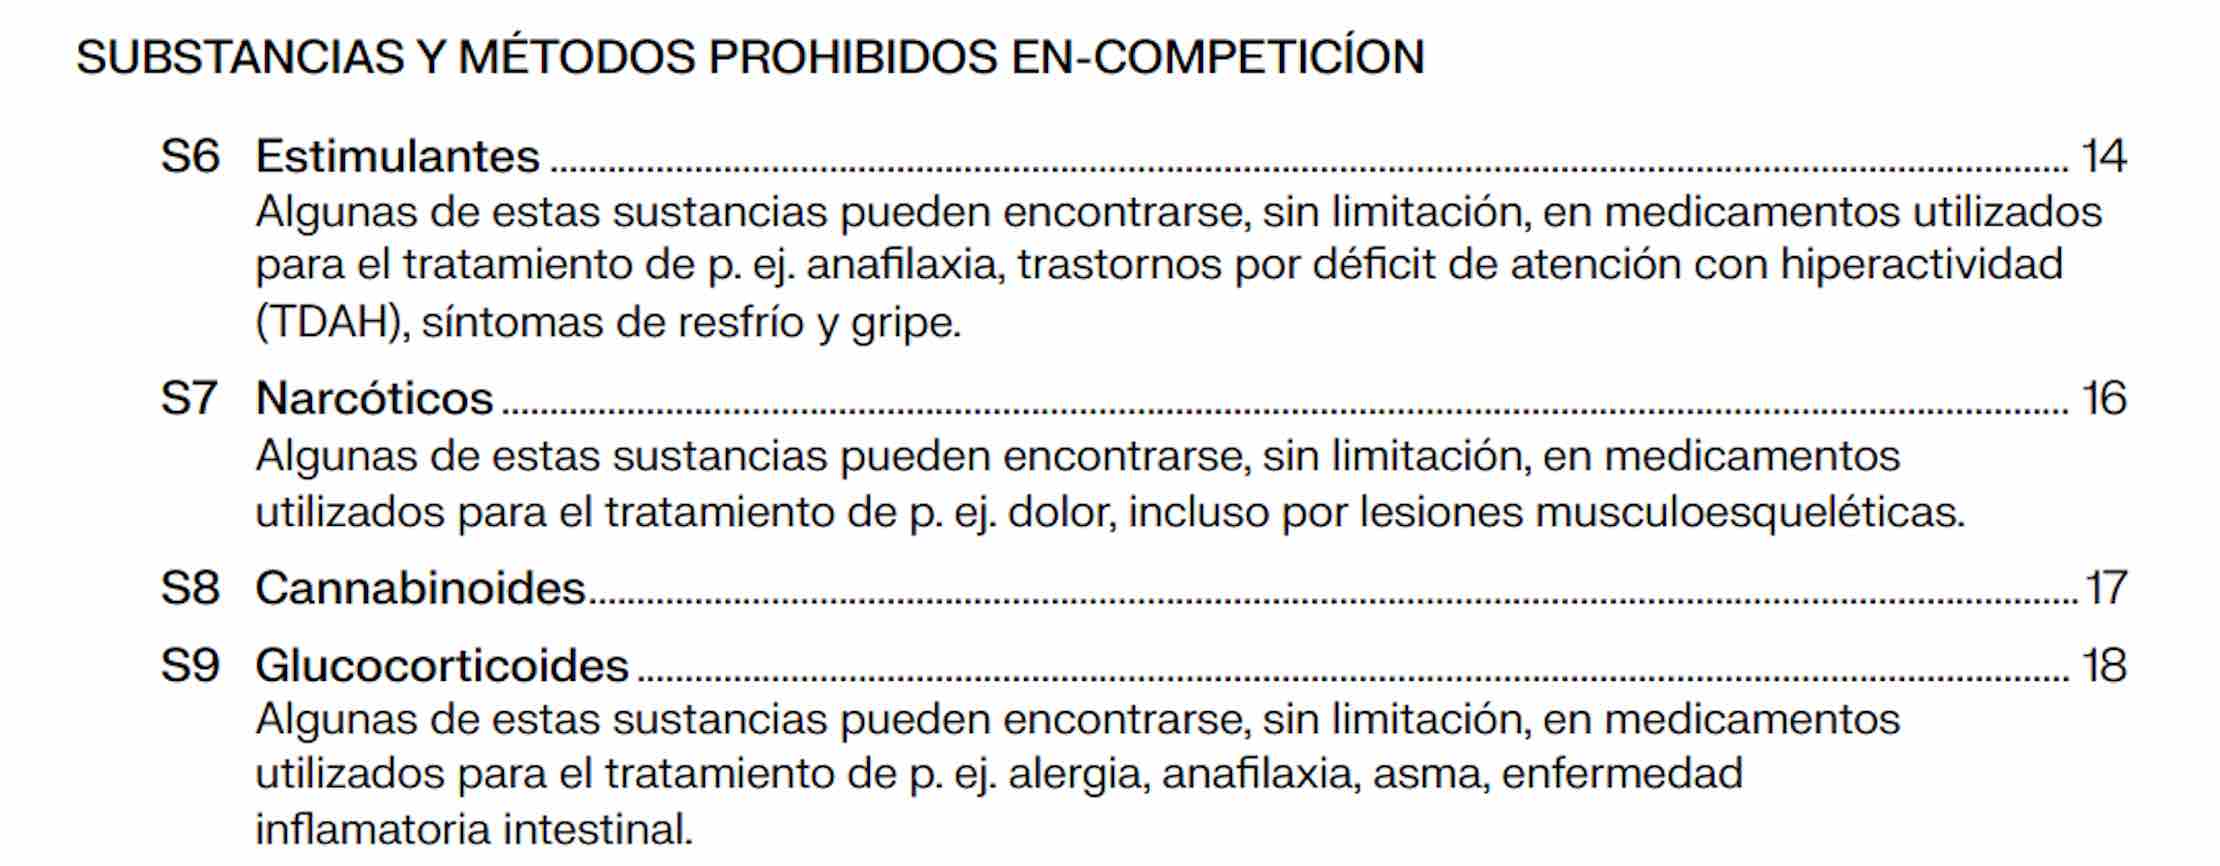 Sustancias y métodos prohibidos en competición